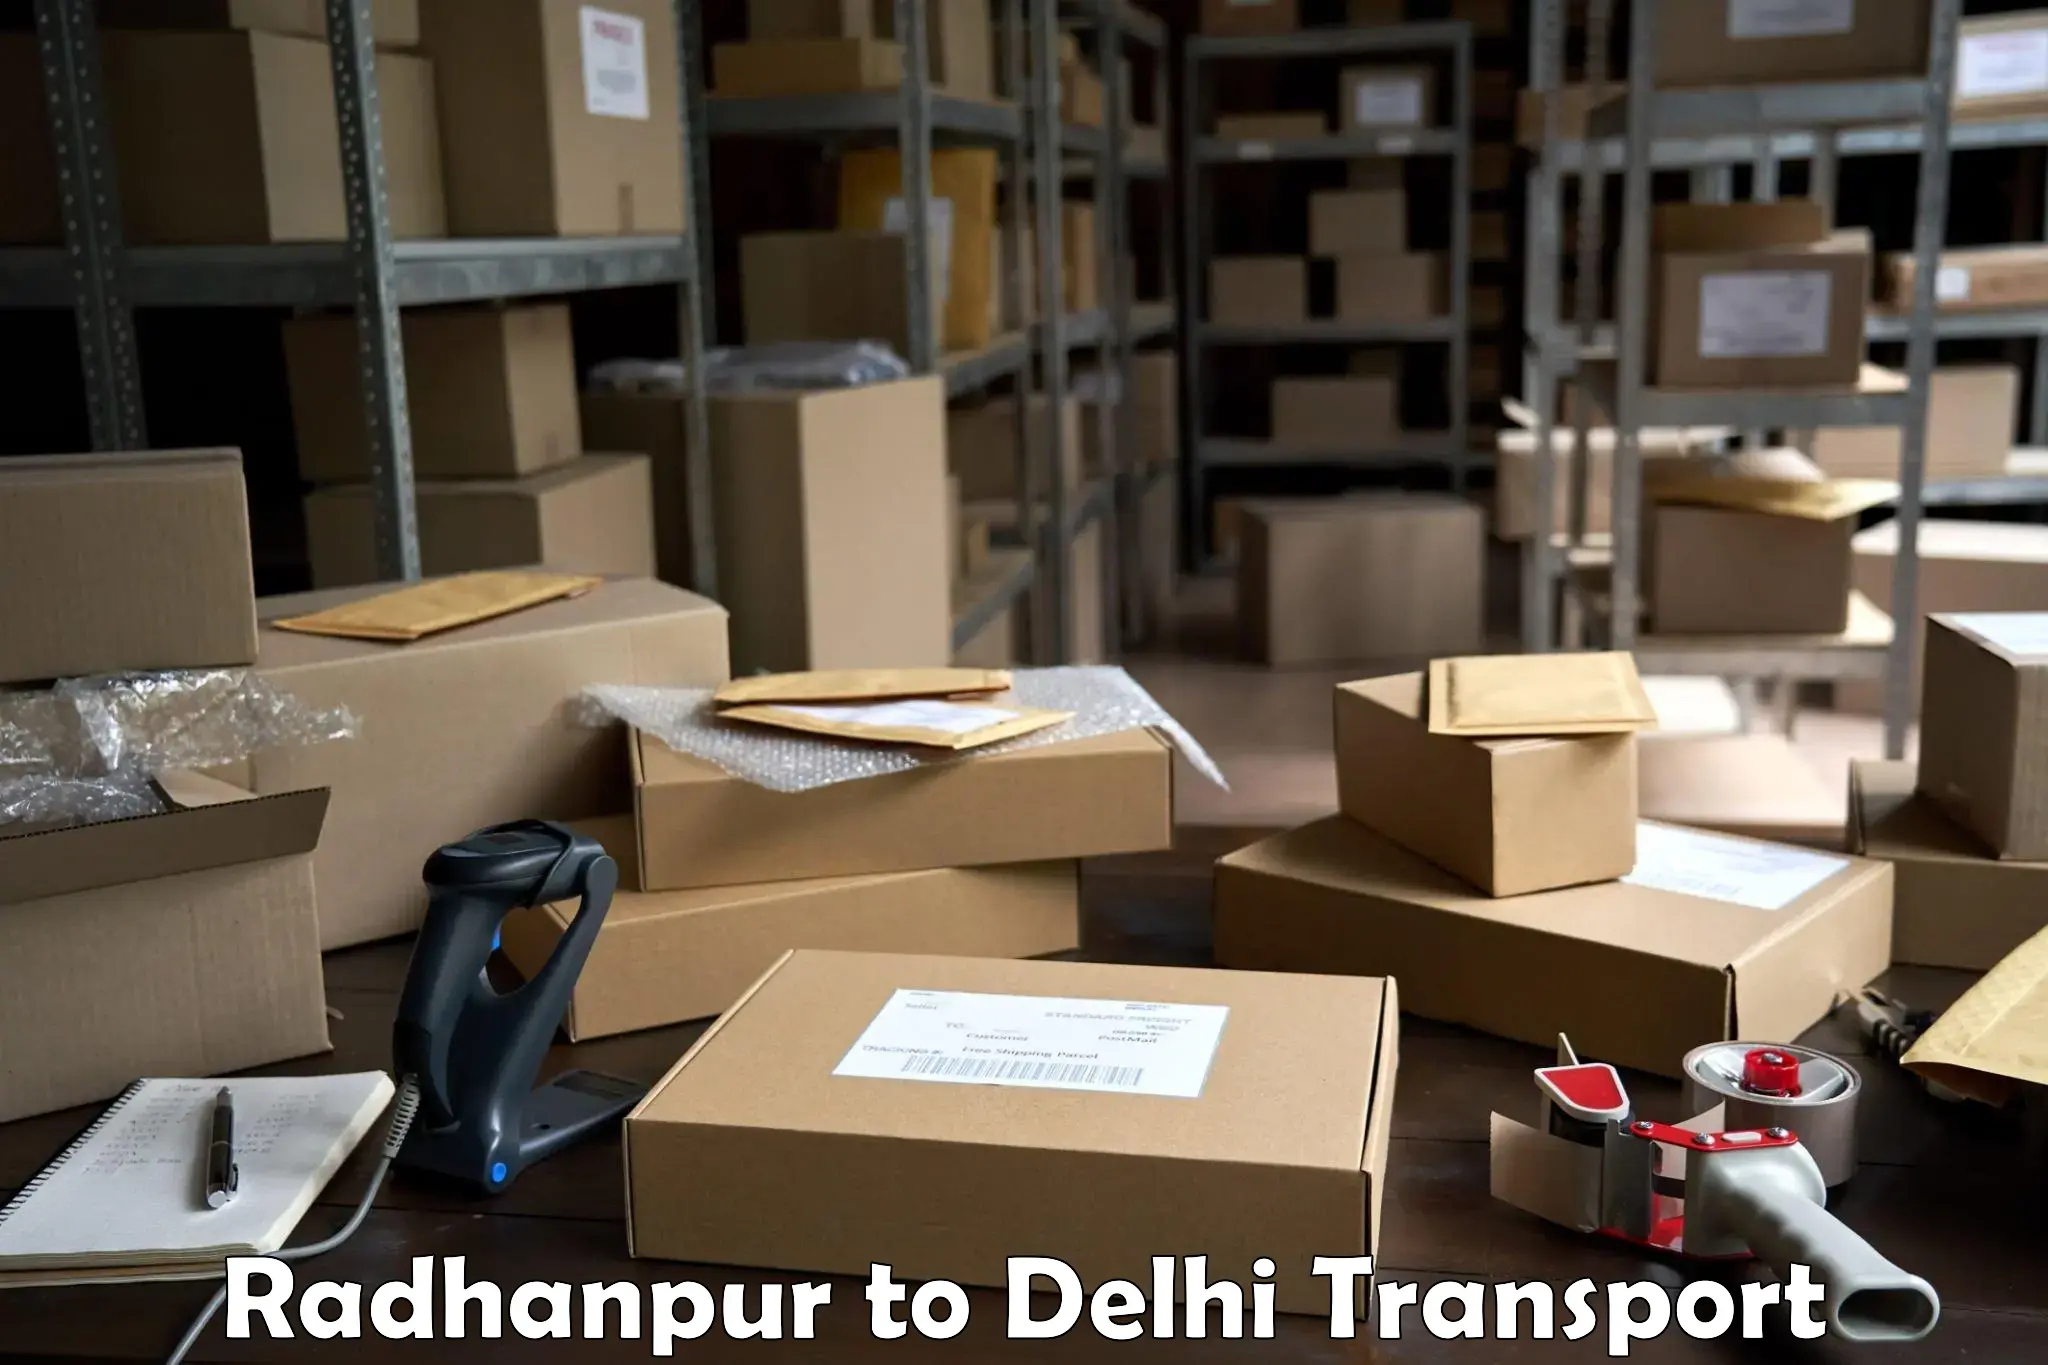 International cargo transportation services Radhanpur to IIT Delhi